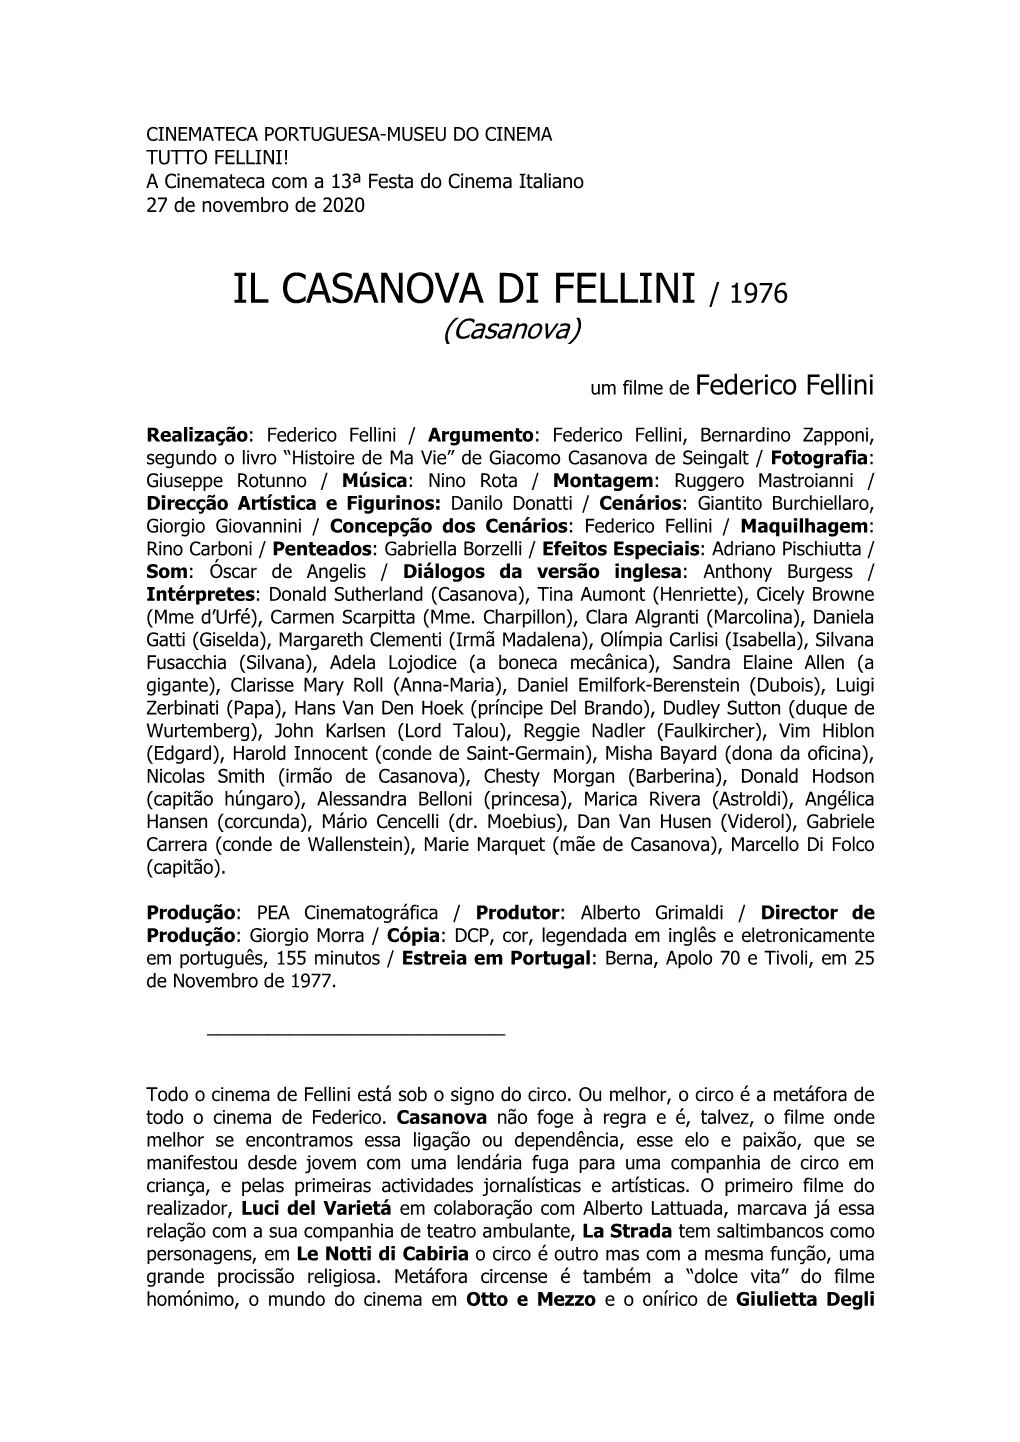 IL CASANOVA DI FELLINI / 1976 (Casanova)